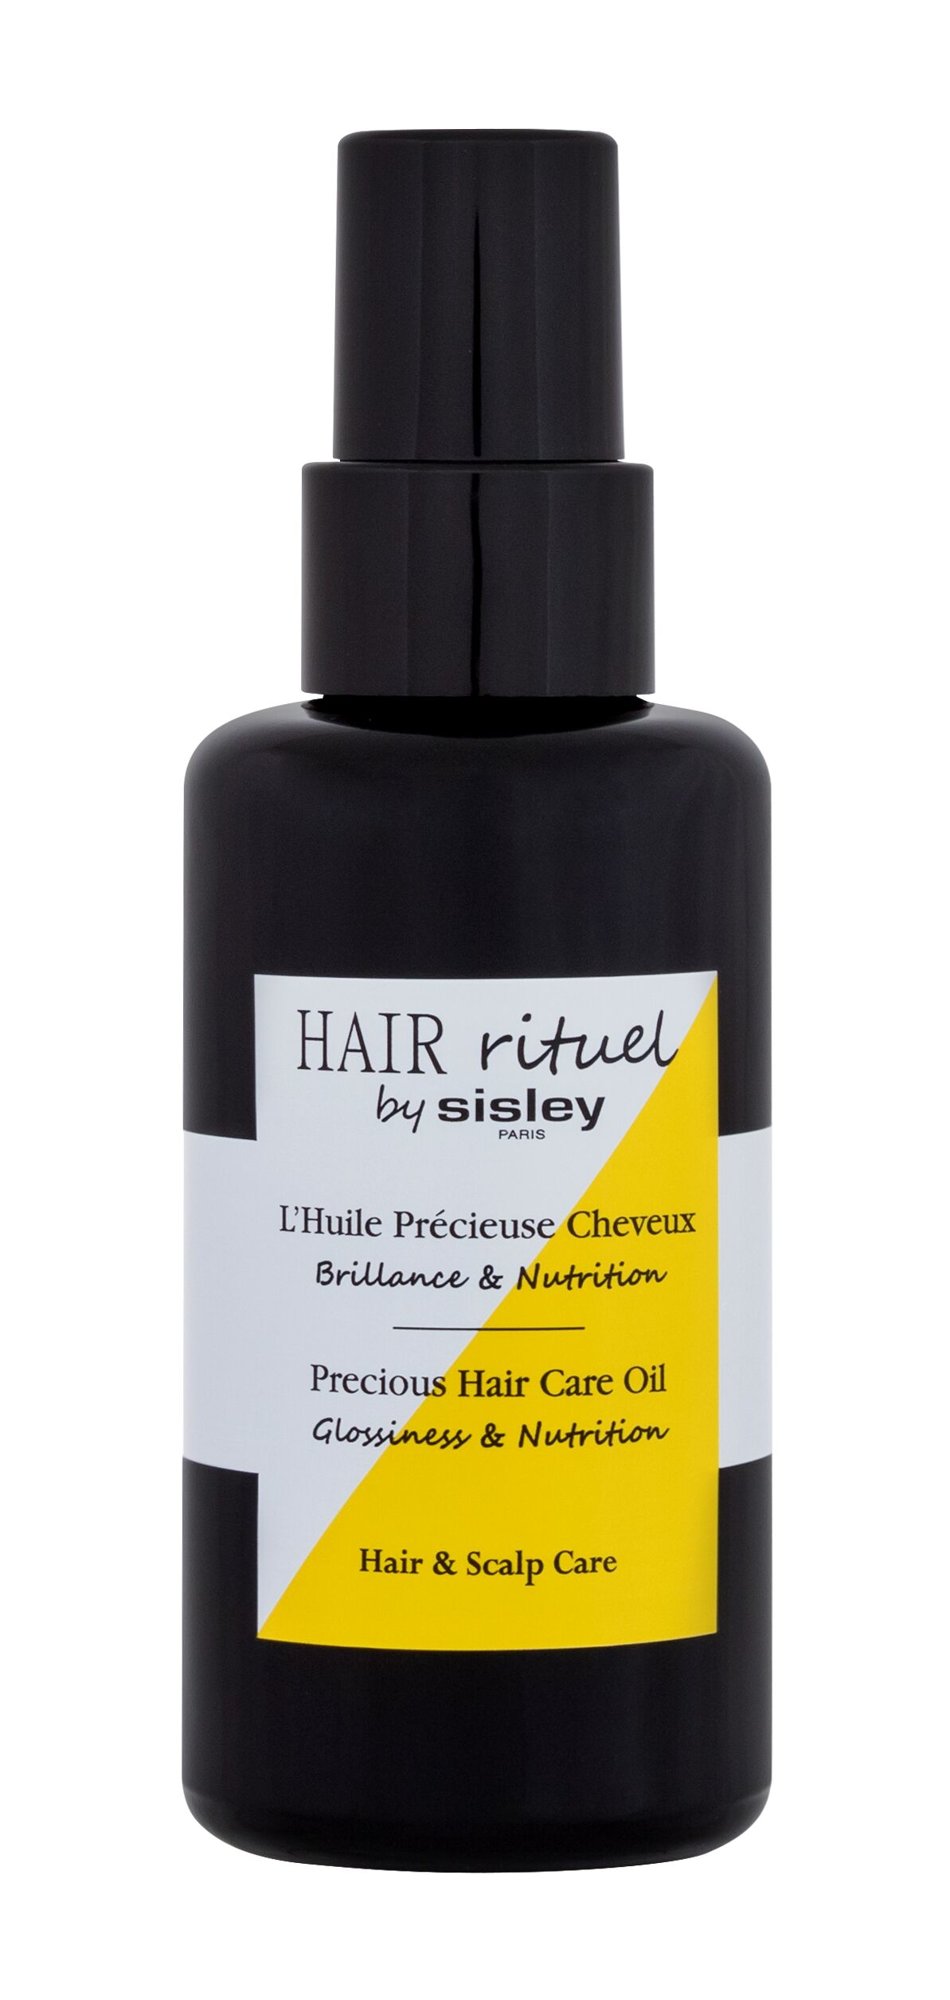 Sisley Hair Rituel Precious Hair Care Oil NIŠINIAI plaukų aliejus